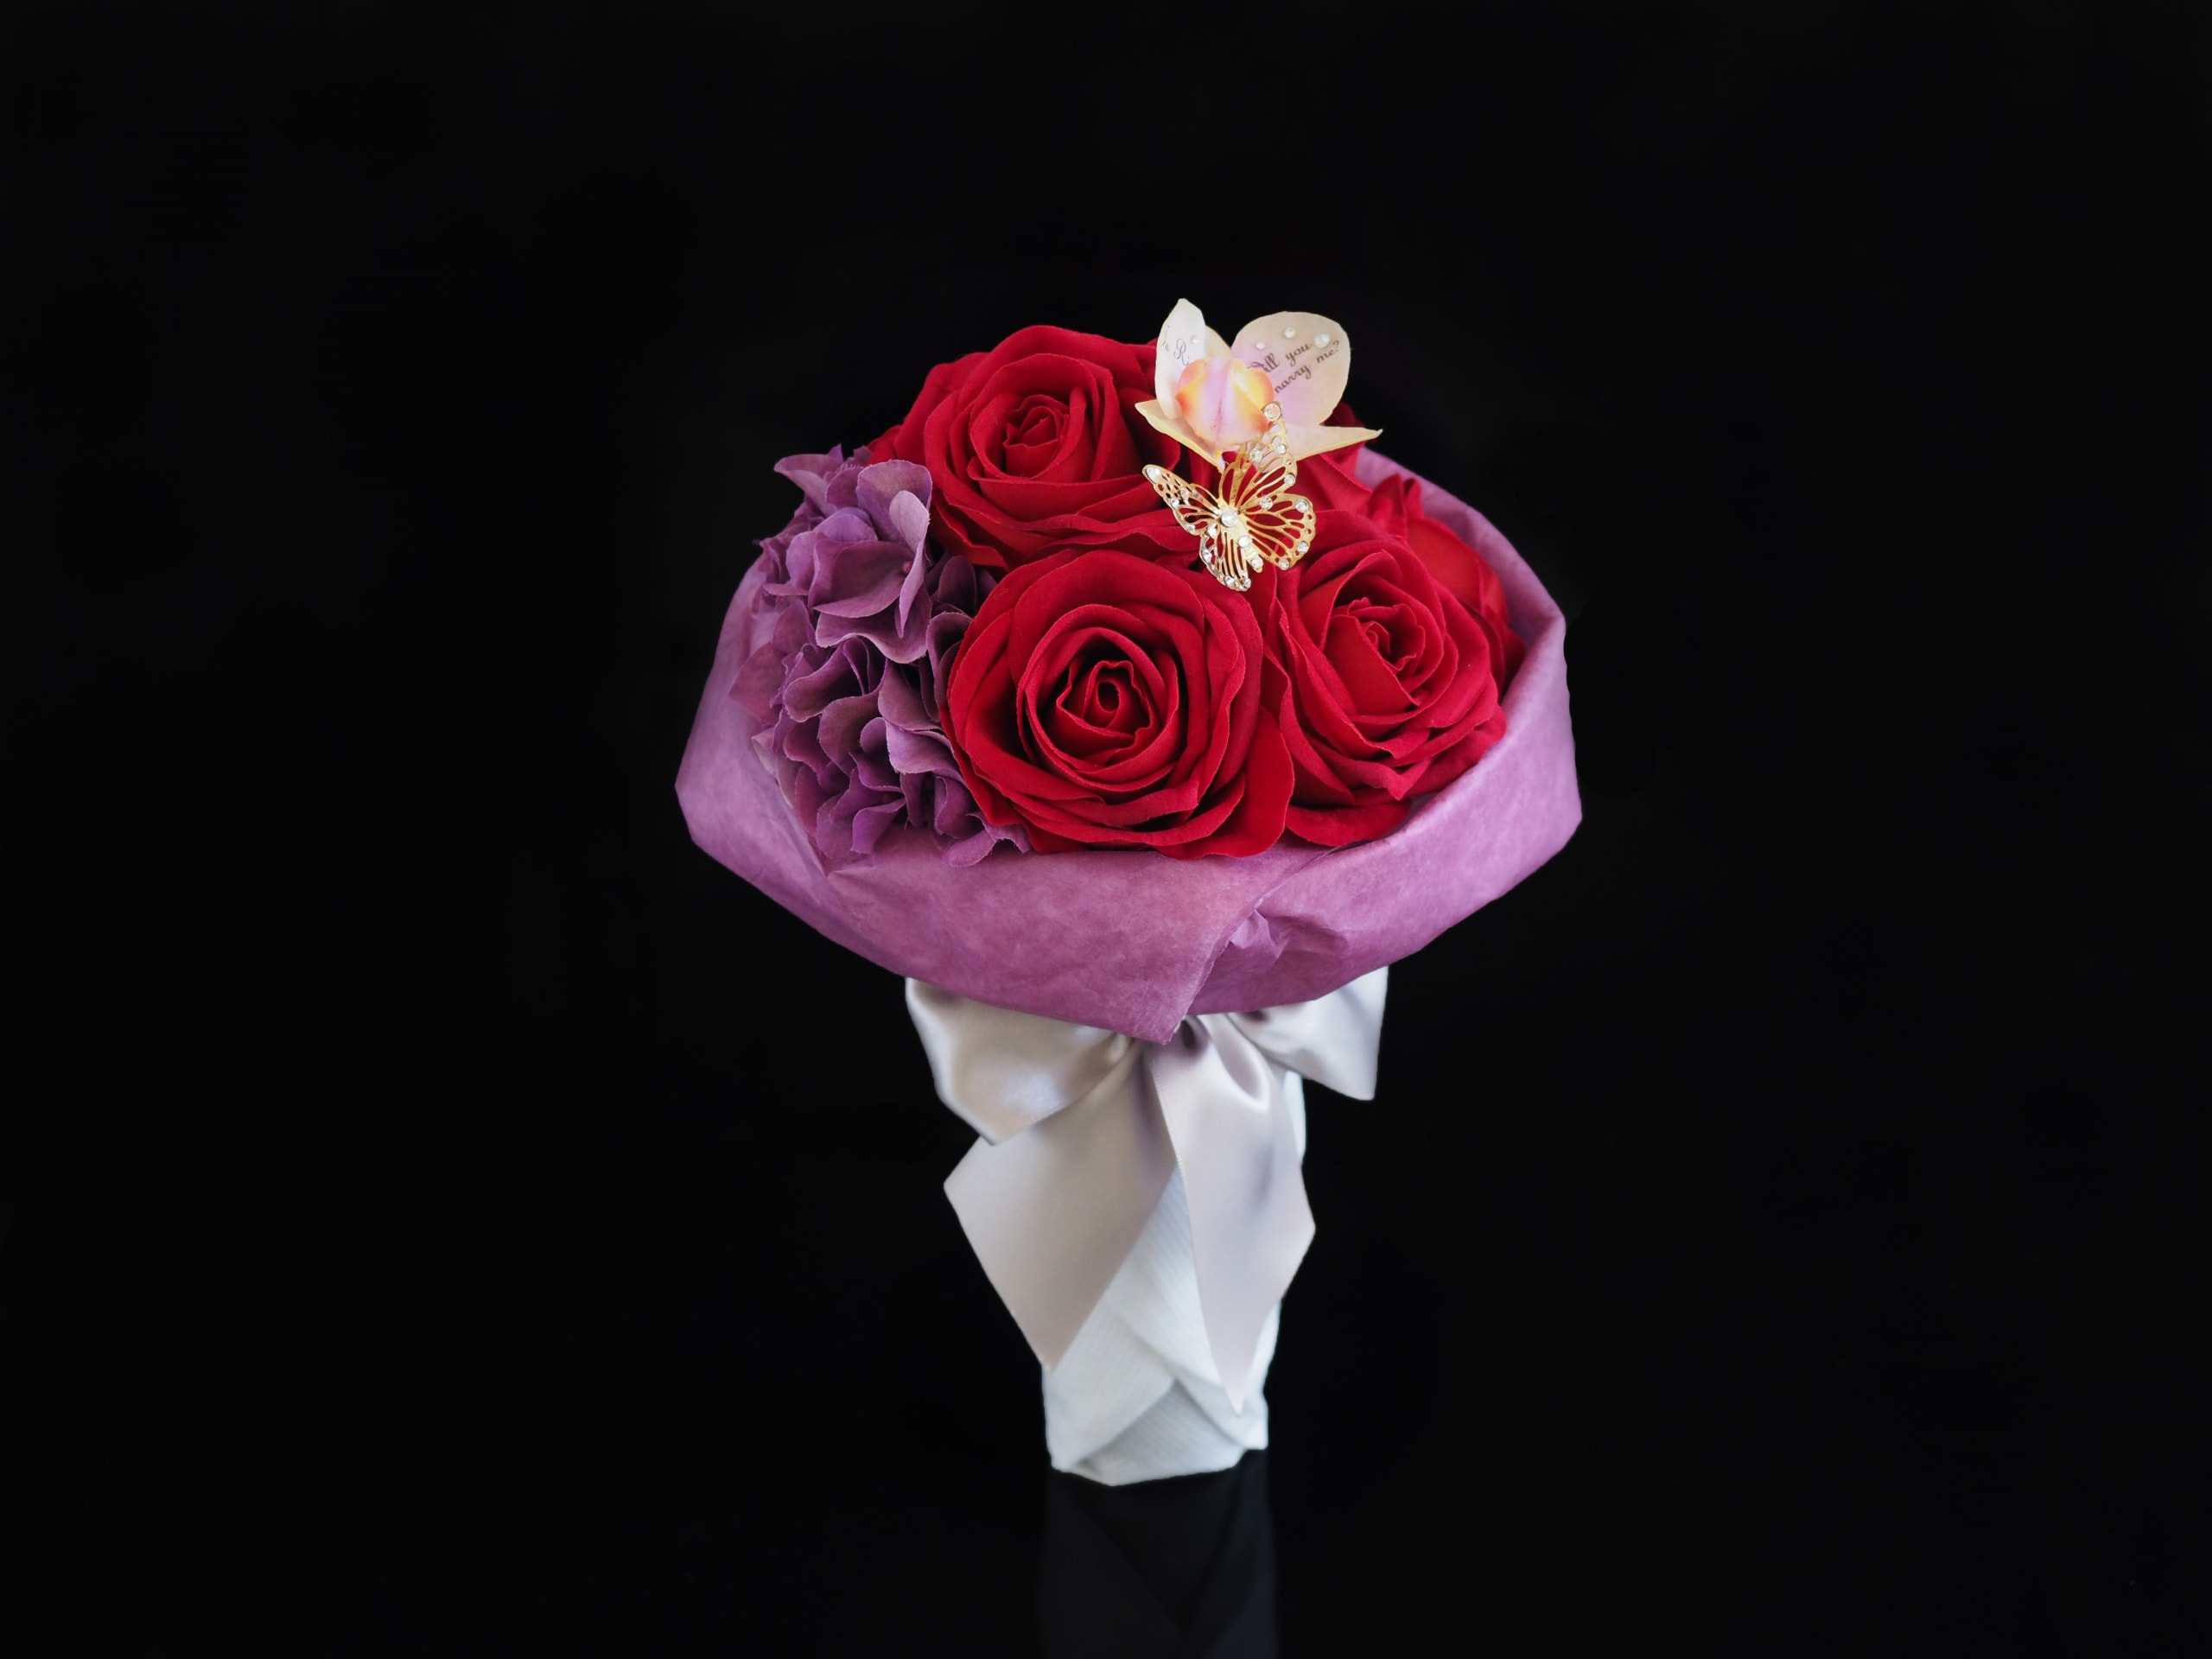 お花の定番「真紅のバラの花束」でゴージャスなクリスマスプロポーズのイメージ